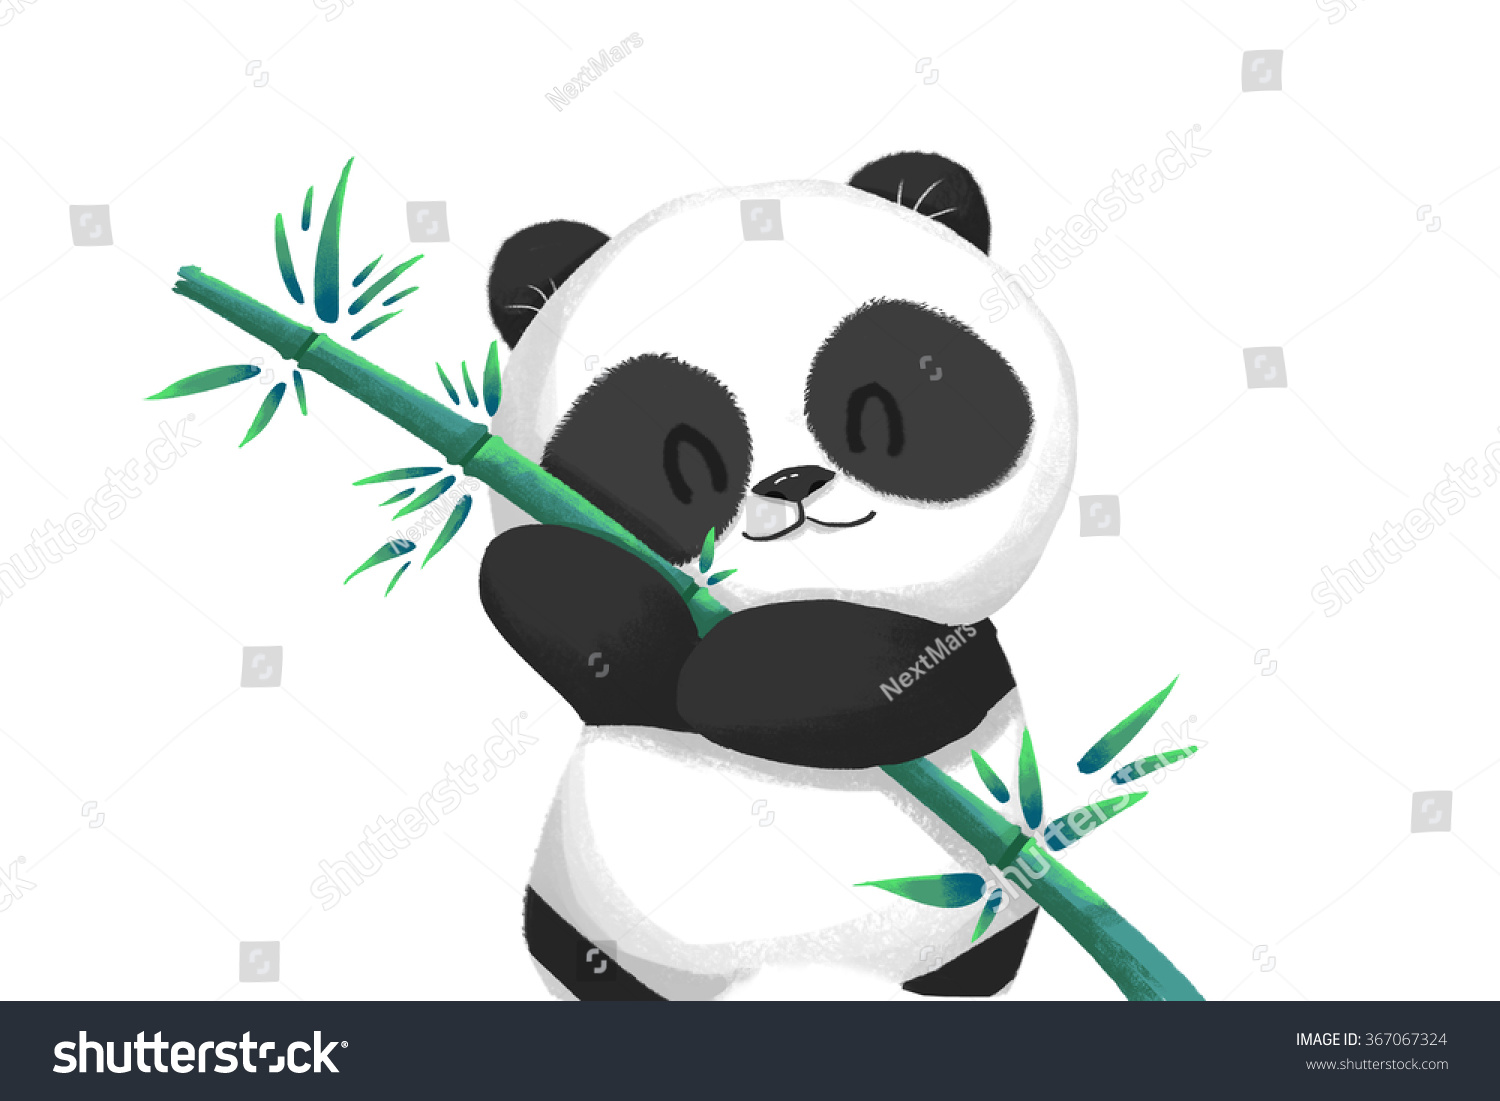 Рисунок Панда с бамбуком лёгкий